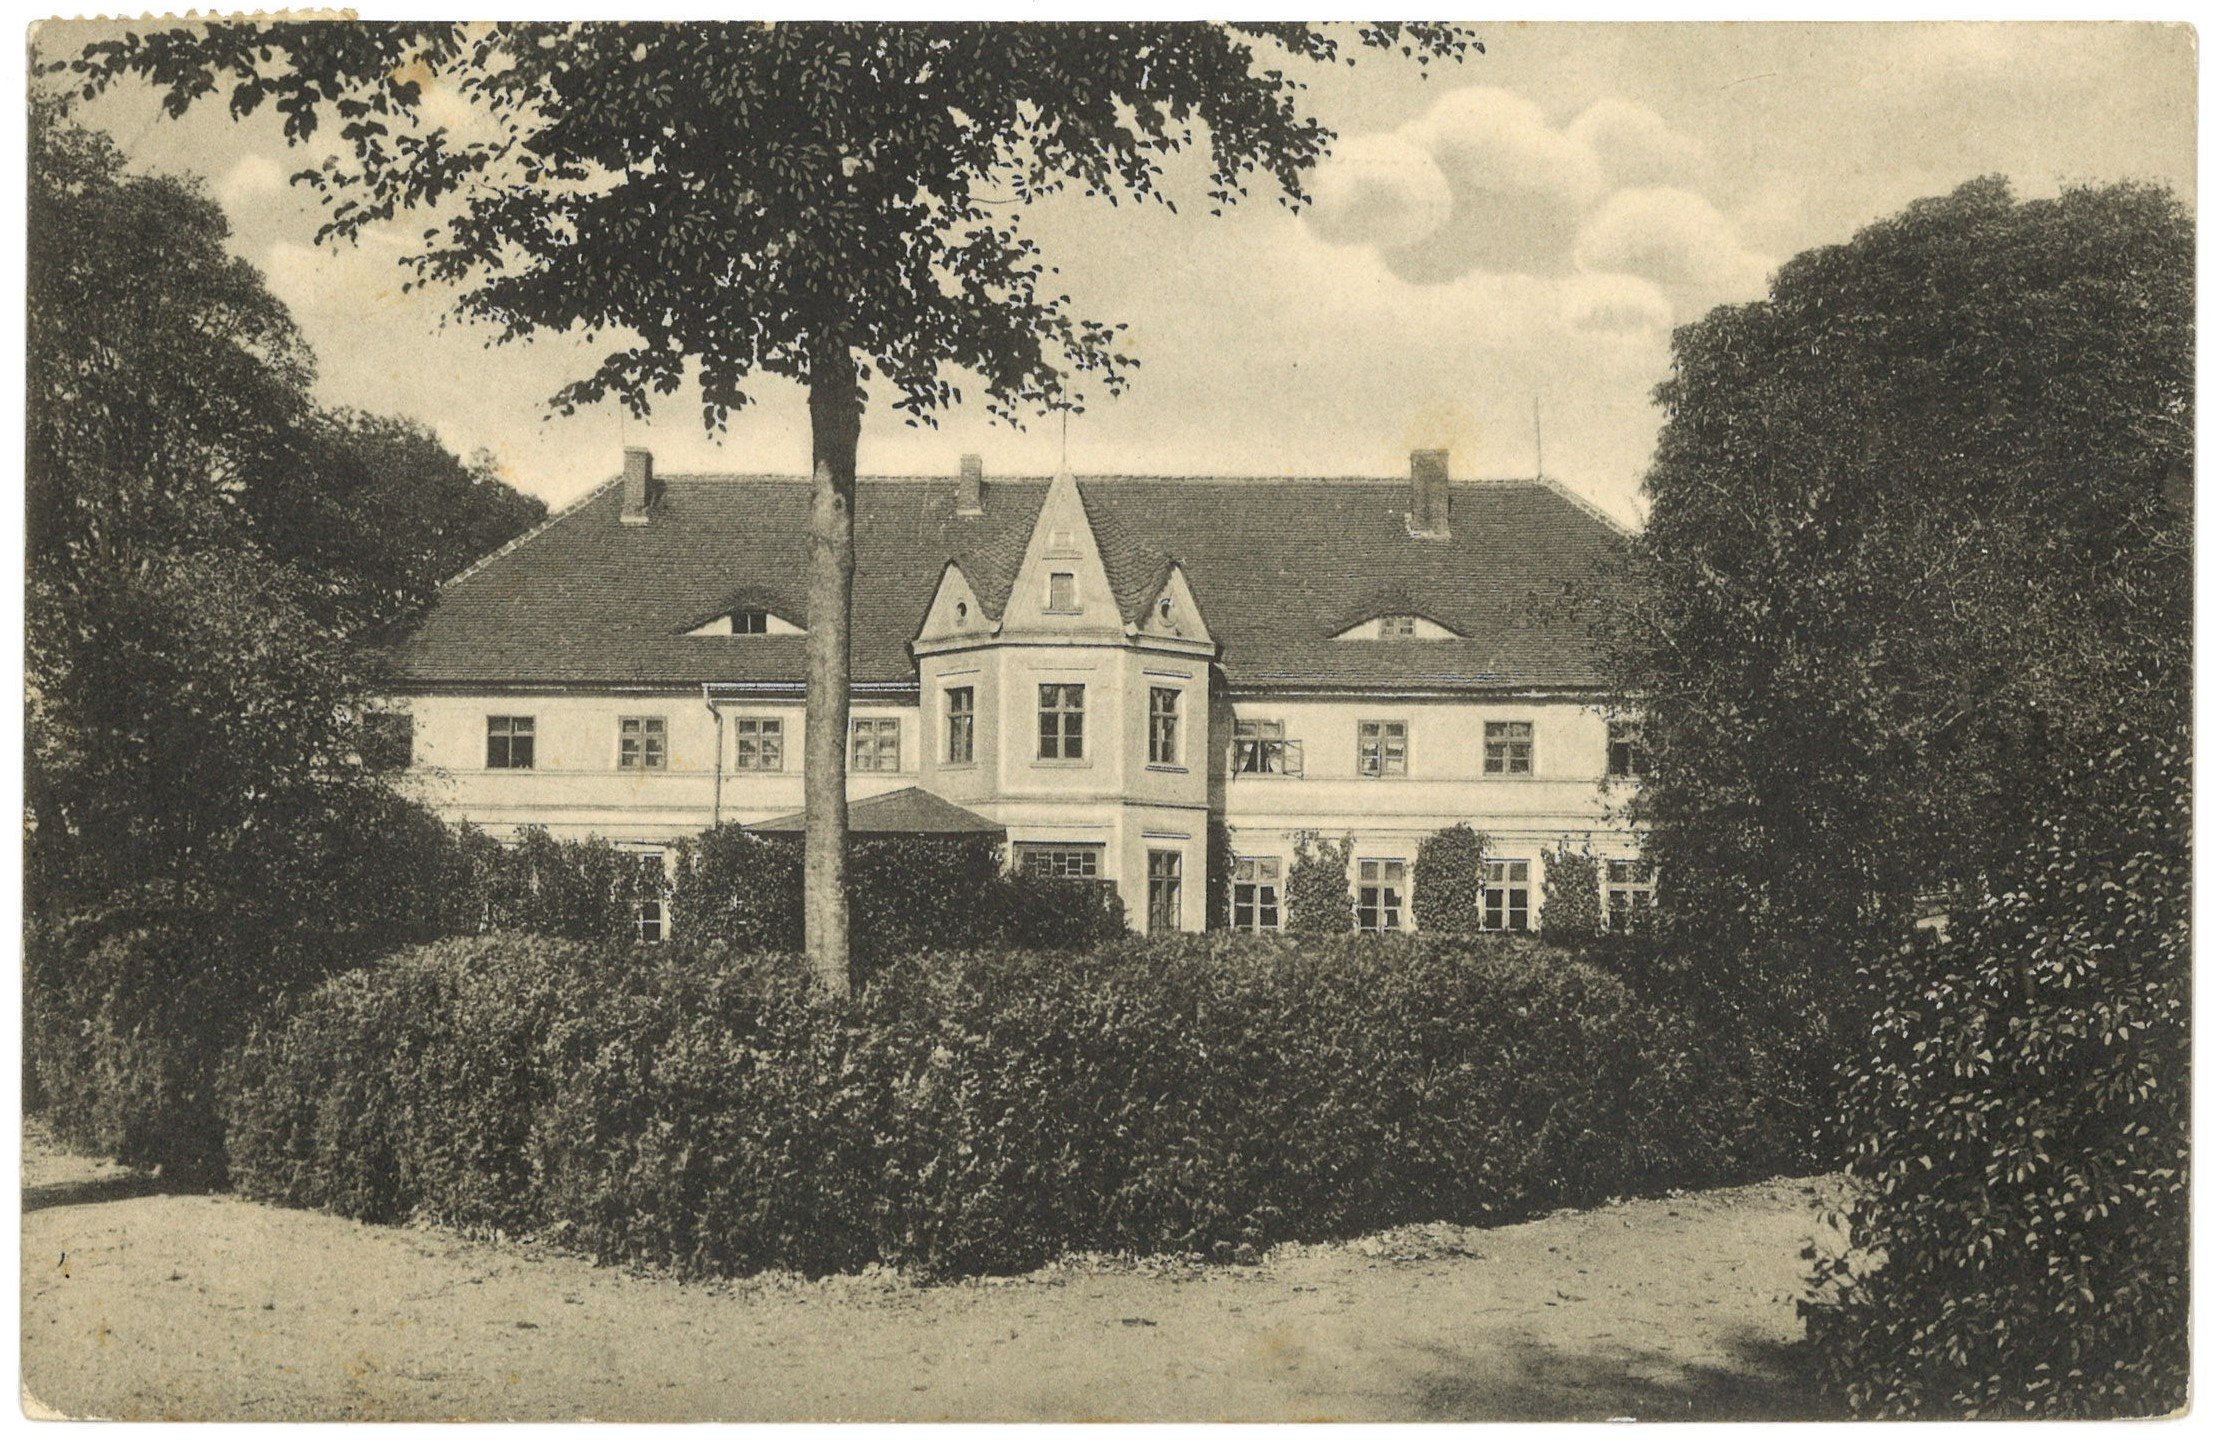 Rohrbeck (Kr. Arnswalde) [Kołki]: Herrenhaus, Gartenseite (Landesgeschichtliche Vereinigung für die Mark Brandenburg e.V. CC BY)